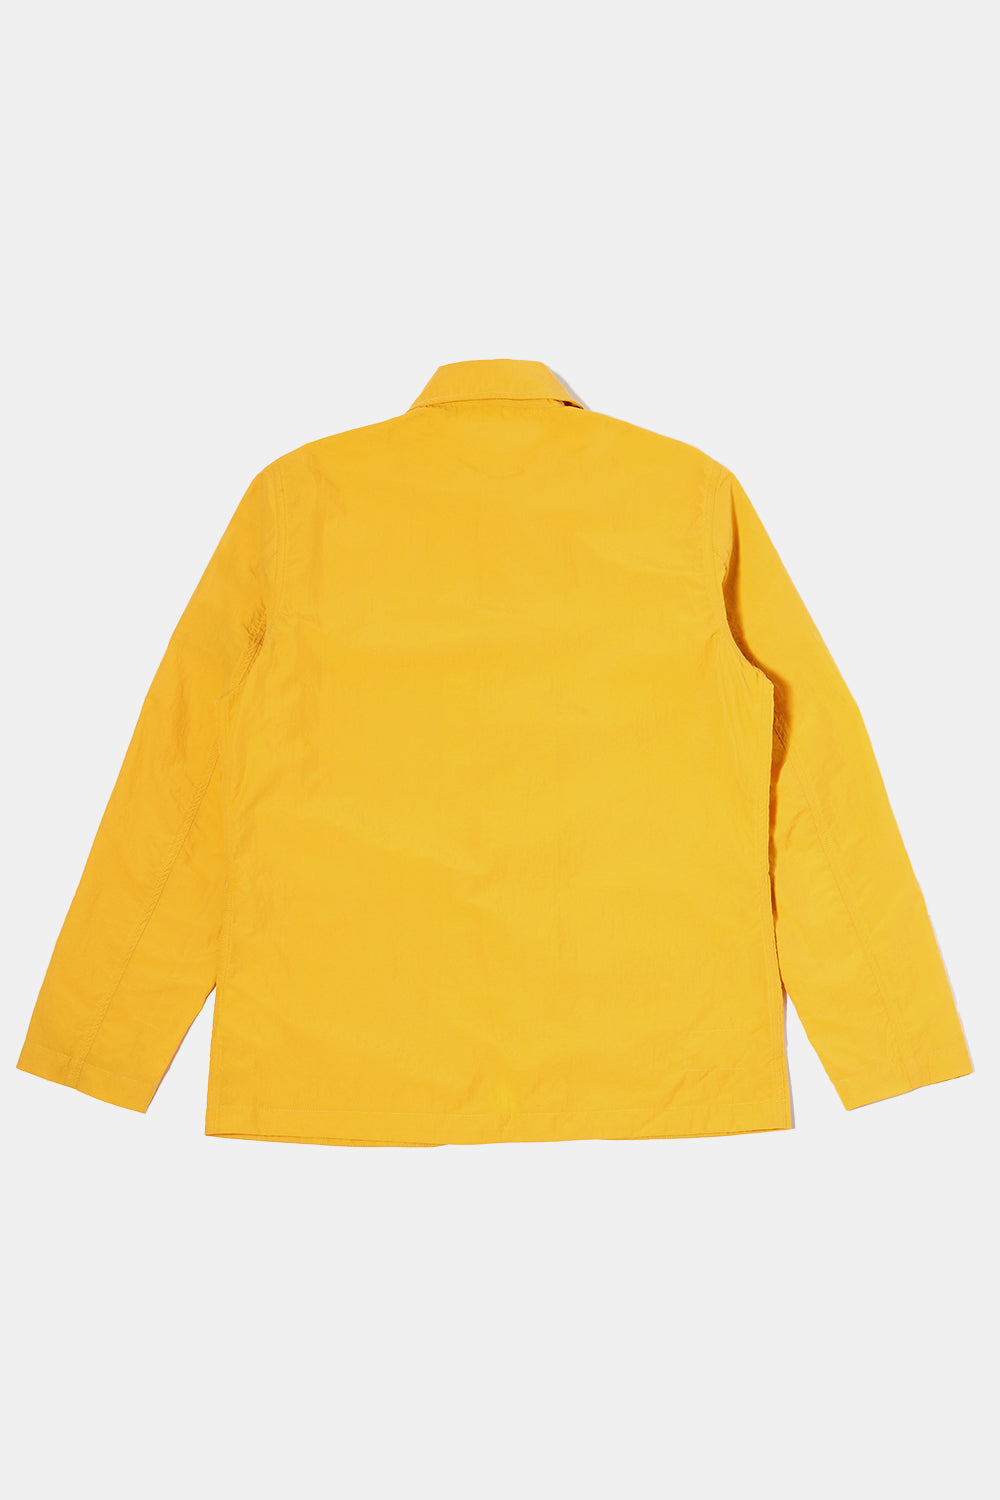 Universal Works Nylon Bakers Chore Jacket (Orange)